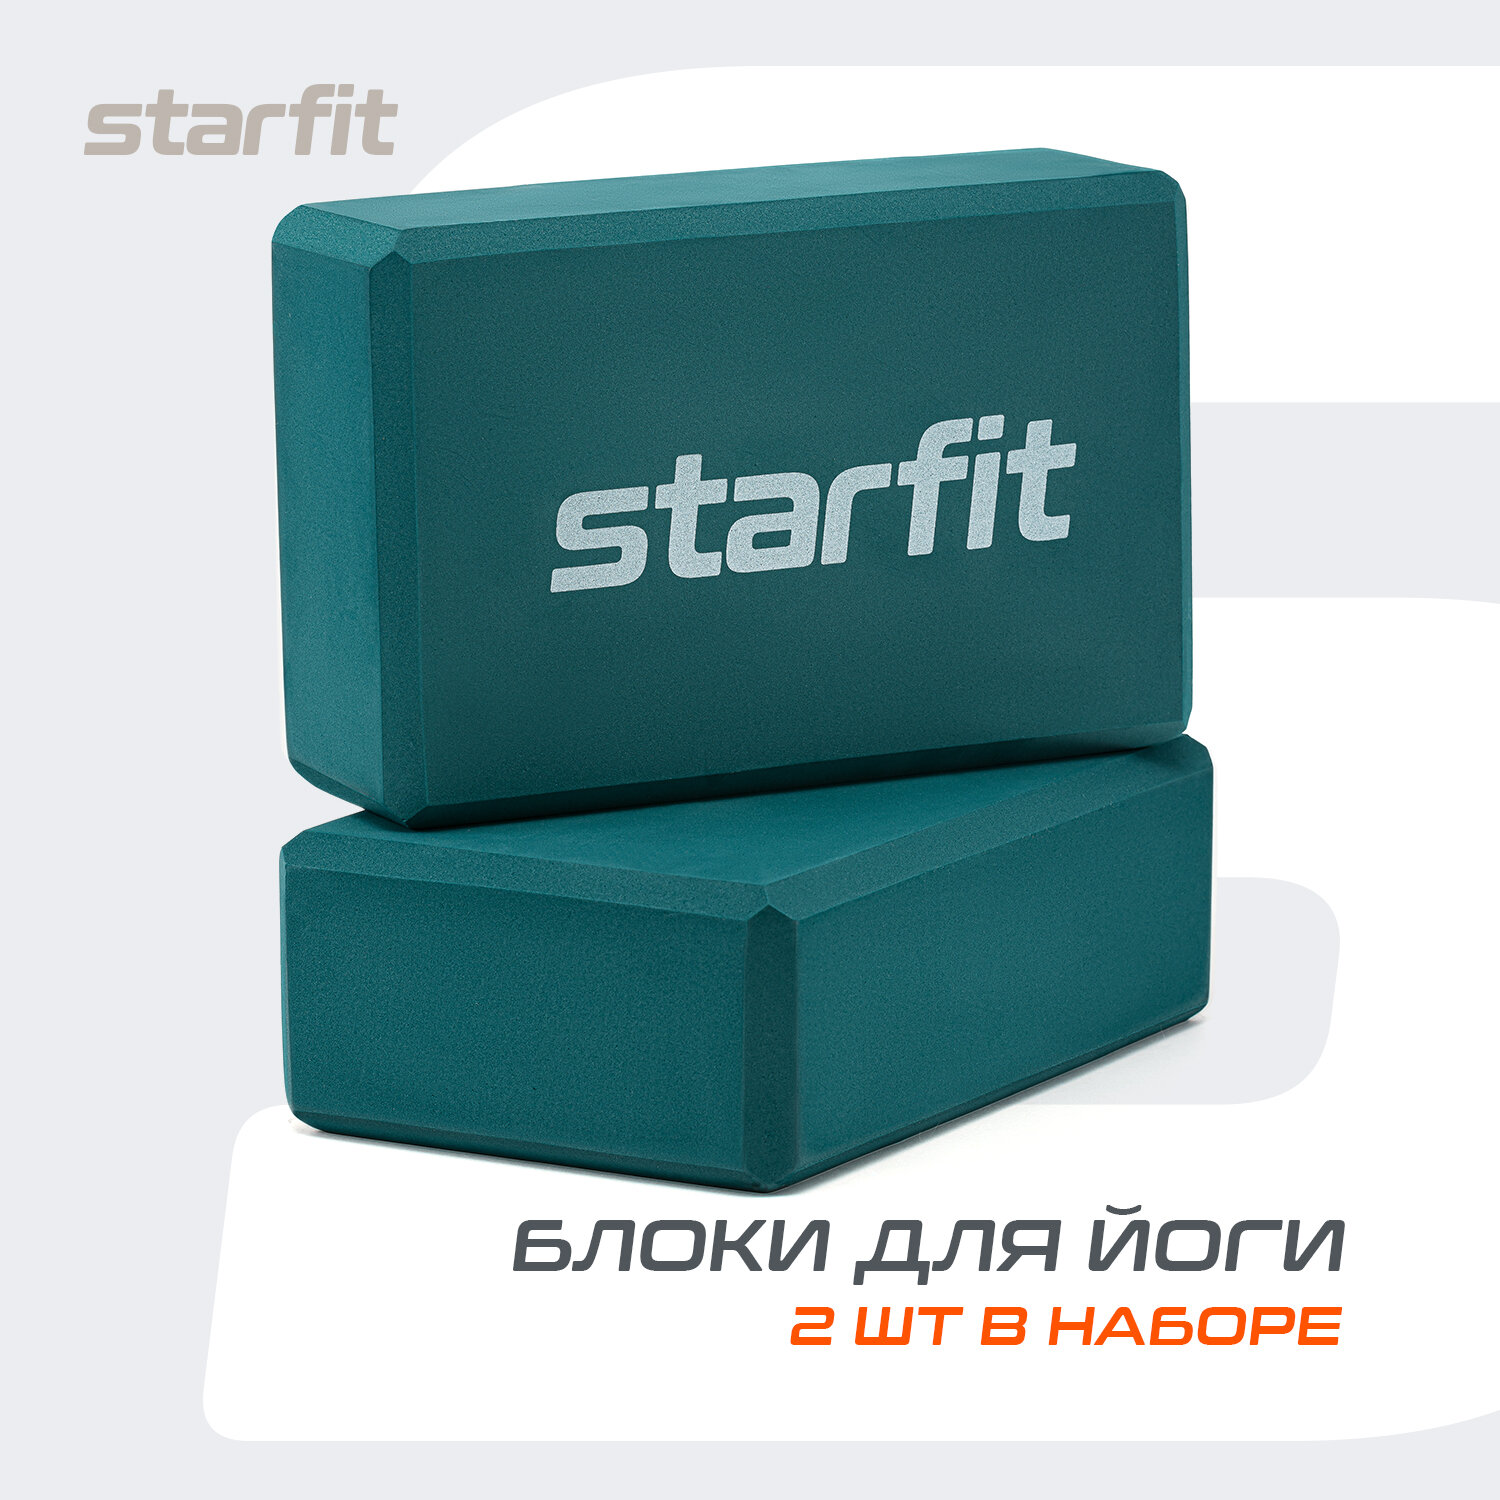 Блок для йоги STARFIT YB-200 EVA, 8 см, 115 гр, 22,5х15 см, изумрудный, пара